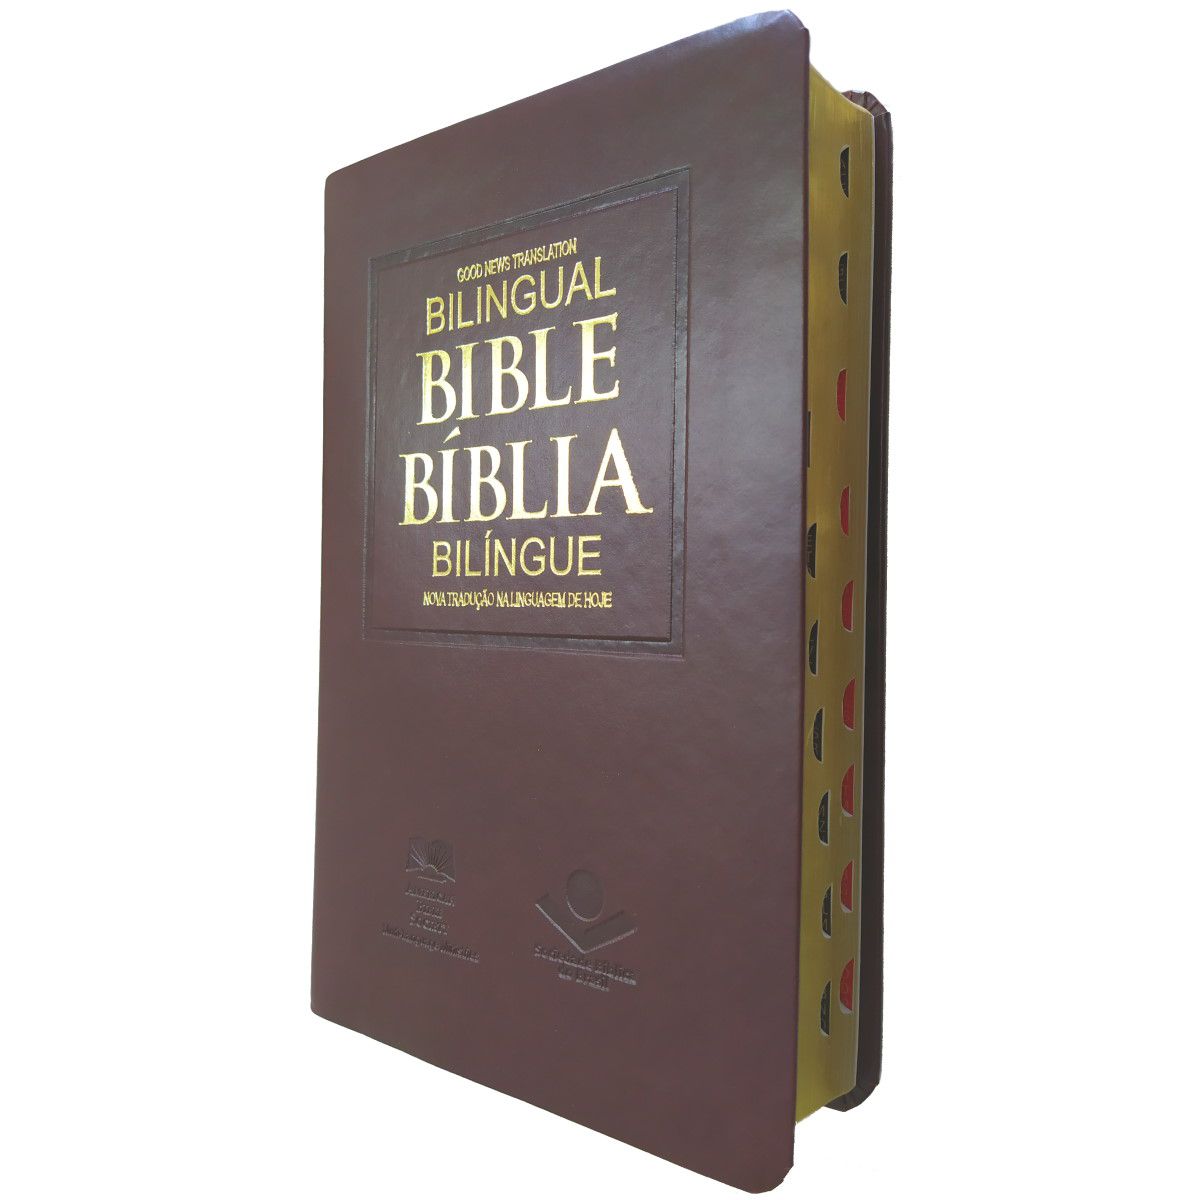 Bíblia Bilíngue Português – Inglês: Nova Tradução na Linguagem de Hoje  (NTLH), de Sociedade Bíblica do Brasil.